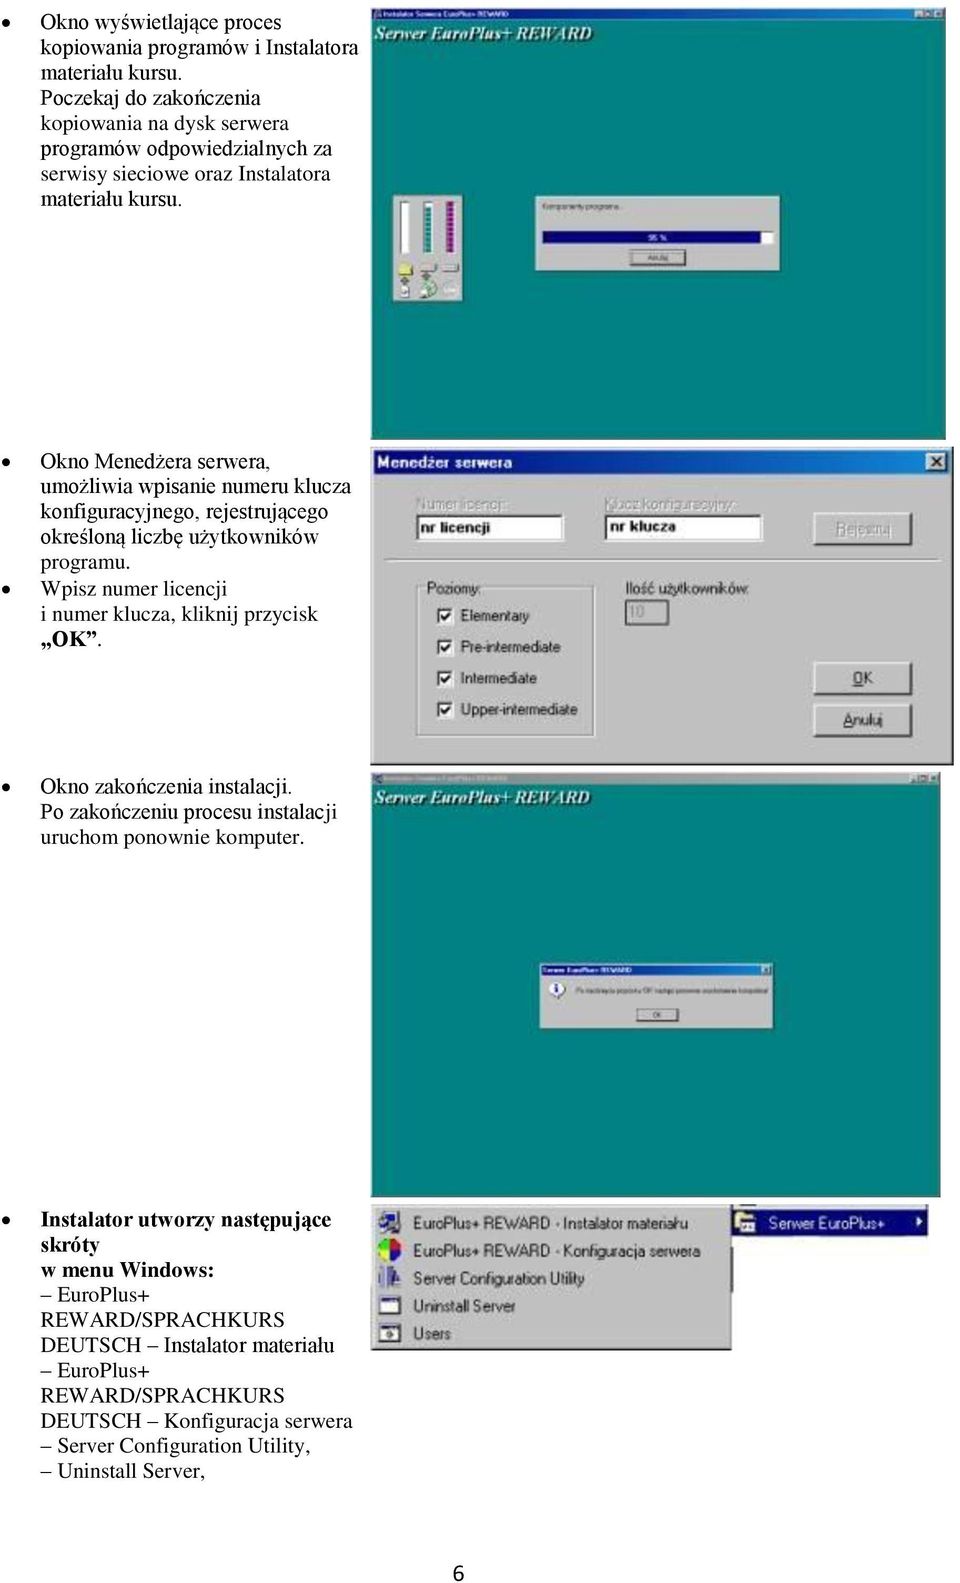 Okno Menedżera serwera, umożliwia wpisanie numeru klucza konfiguracyjnego, rejestrującego określoną liczbę użytkowników programu.